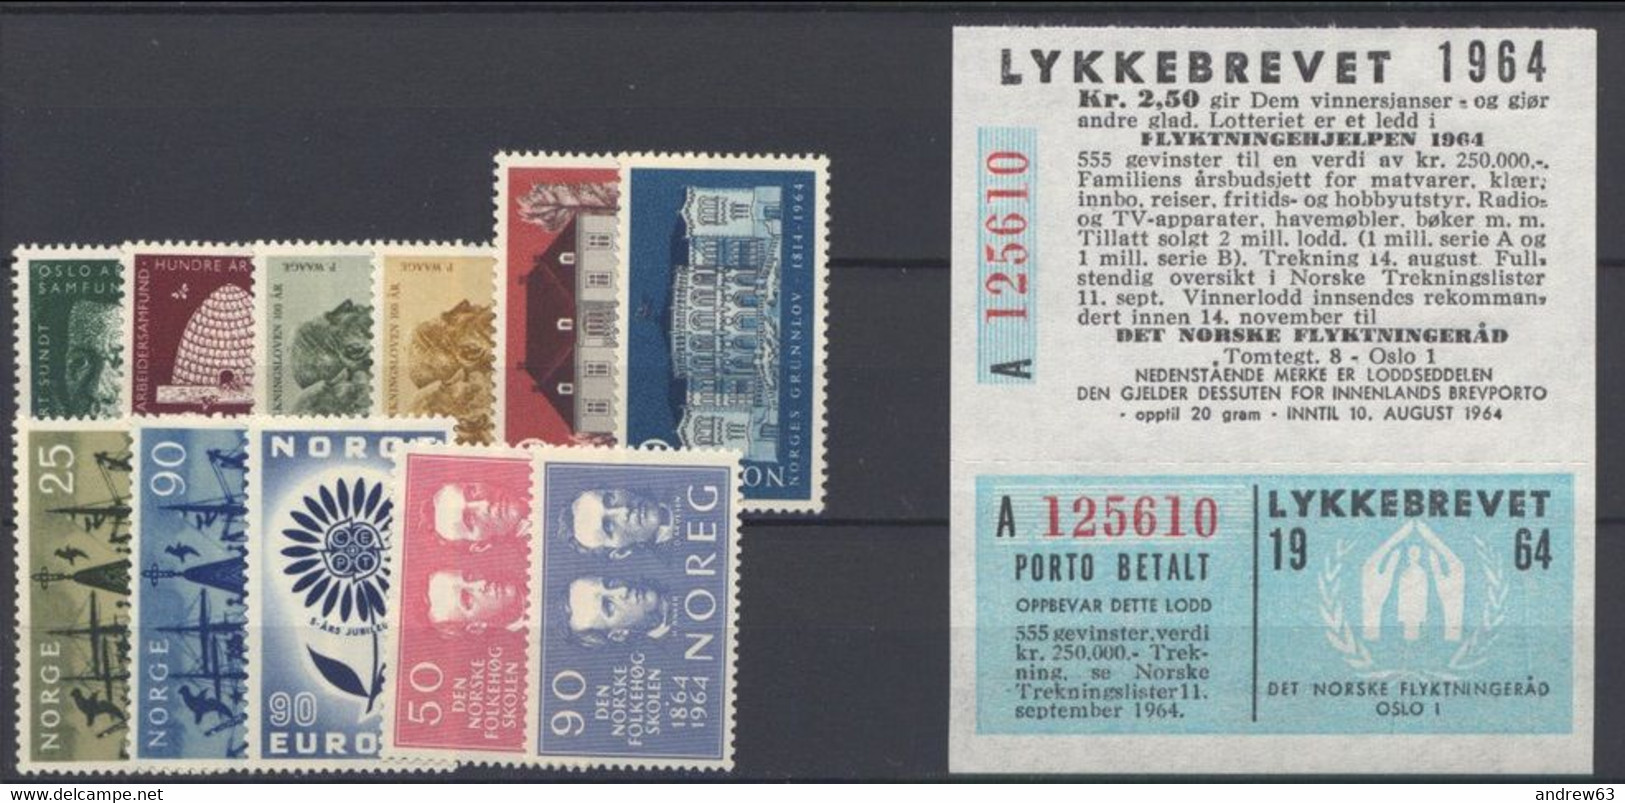 NORVEGIA - Norge - Norwegen - Norway - 1964 With Lykkebrevet - Annata Completa / Complete Year **/MNH VF - New - Volledig Jaar